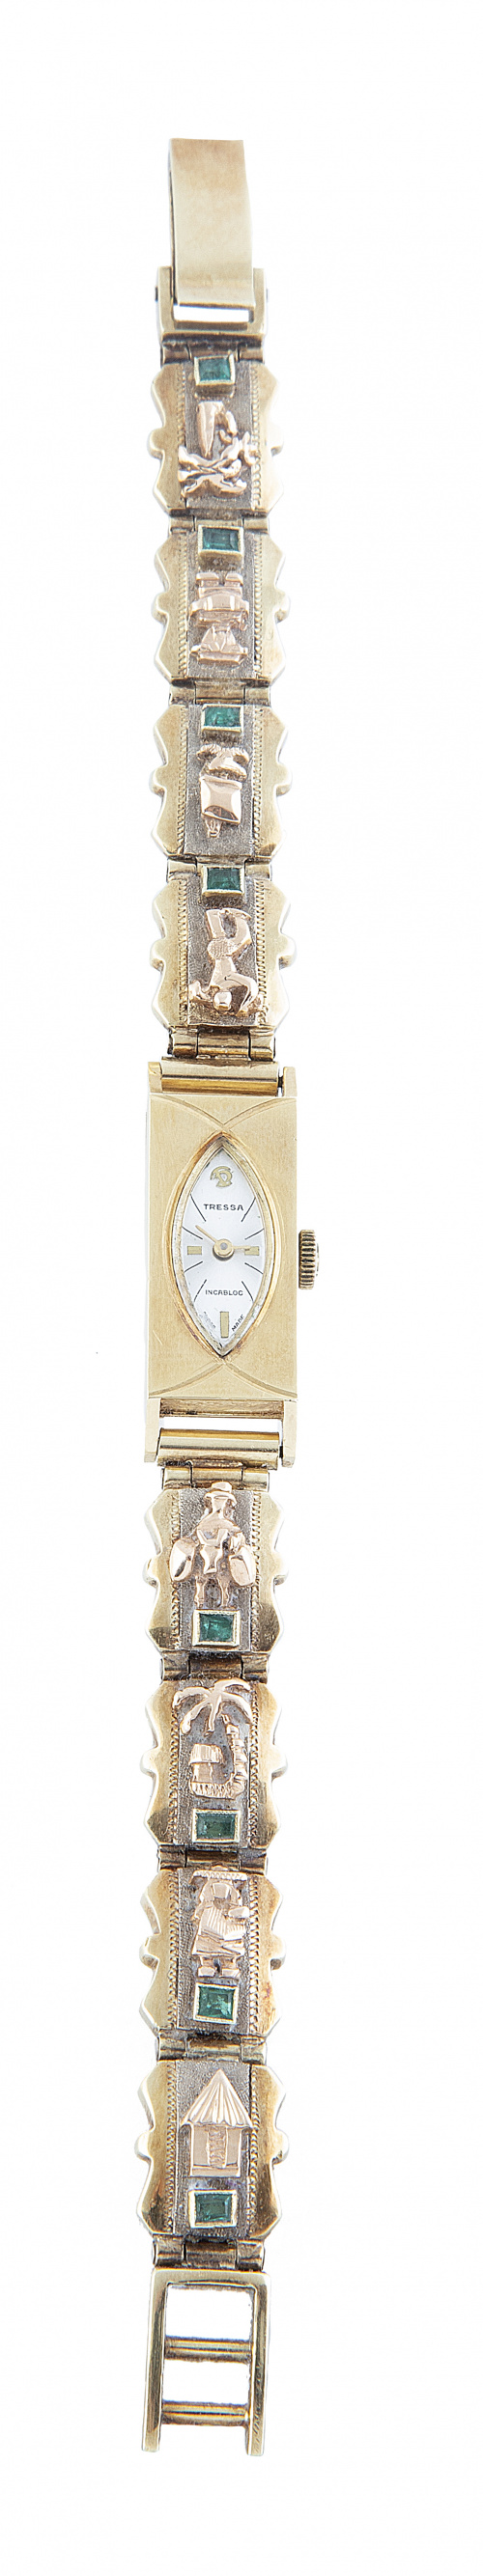 Reloj TRESSA incabloc años 60, con pulsera decorado con mot